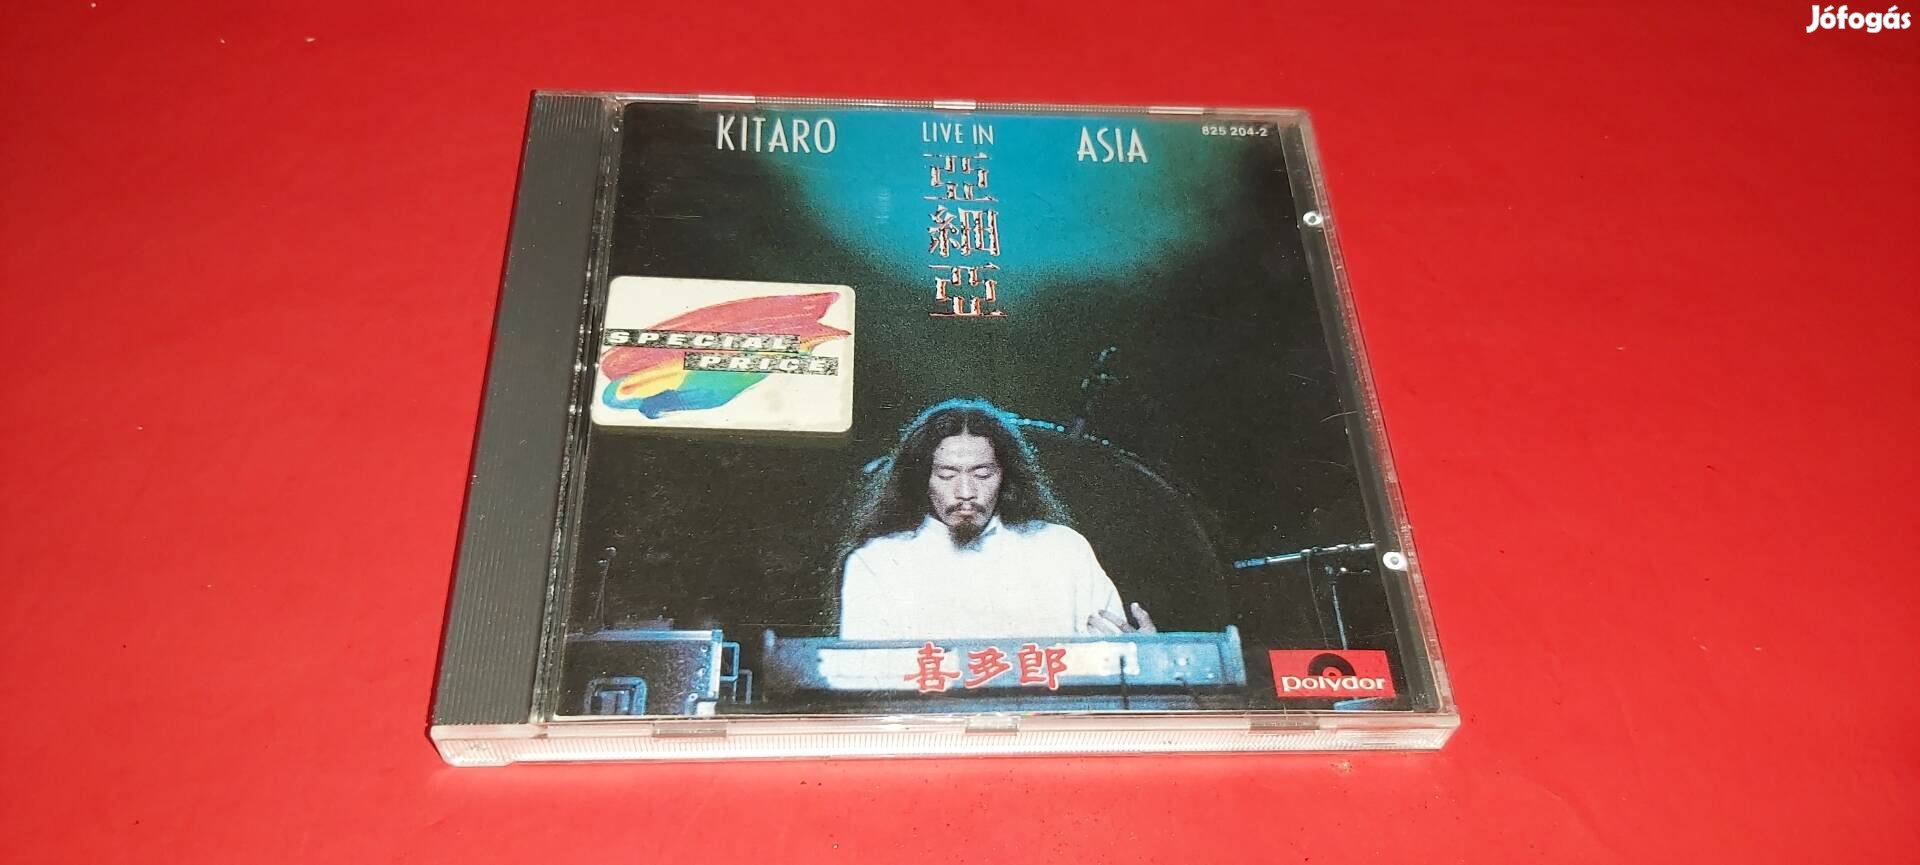 Kitaro Live in Asia Cd 